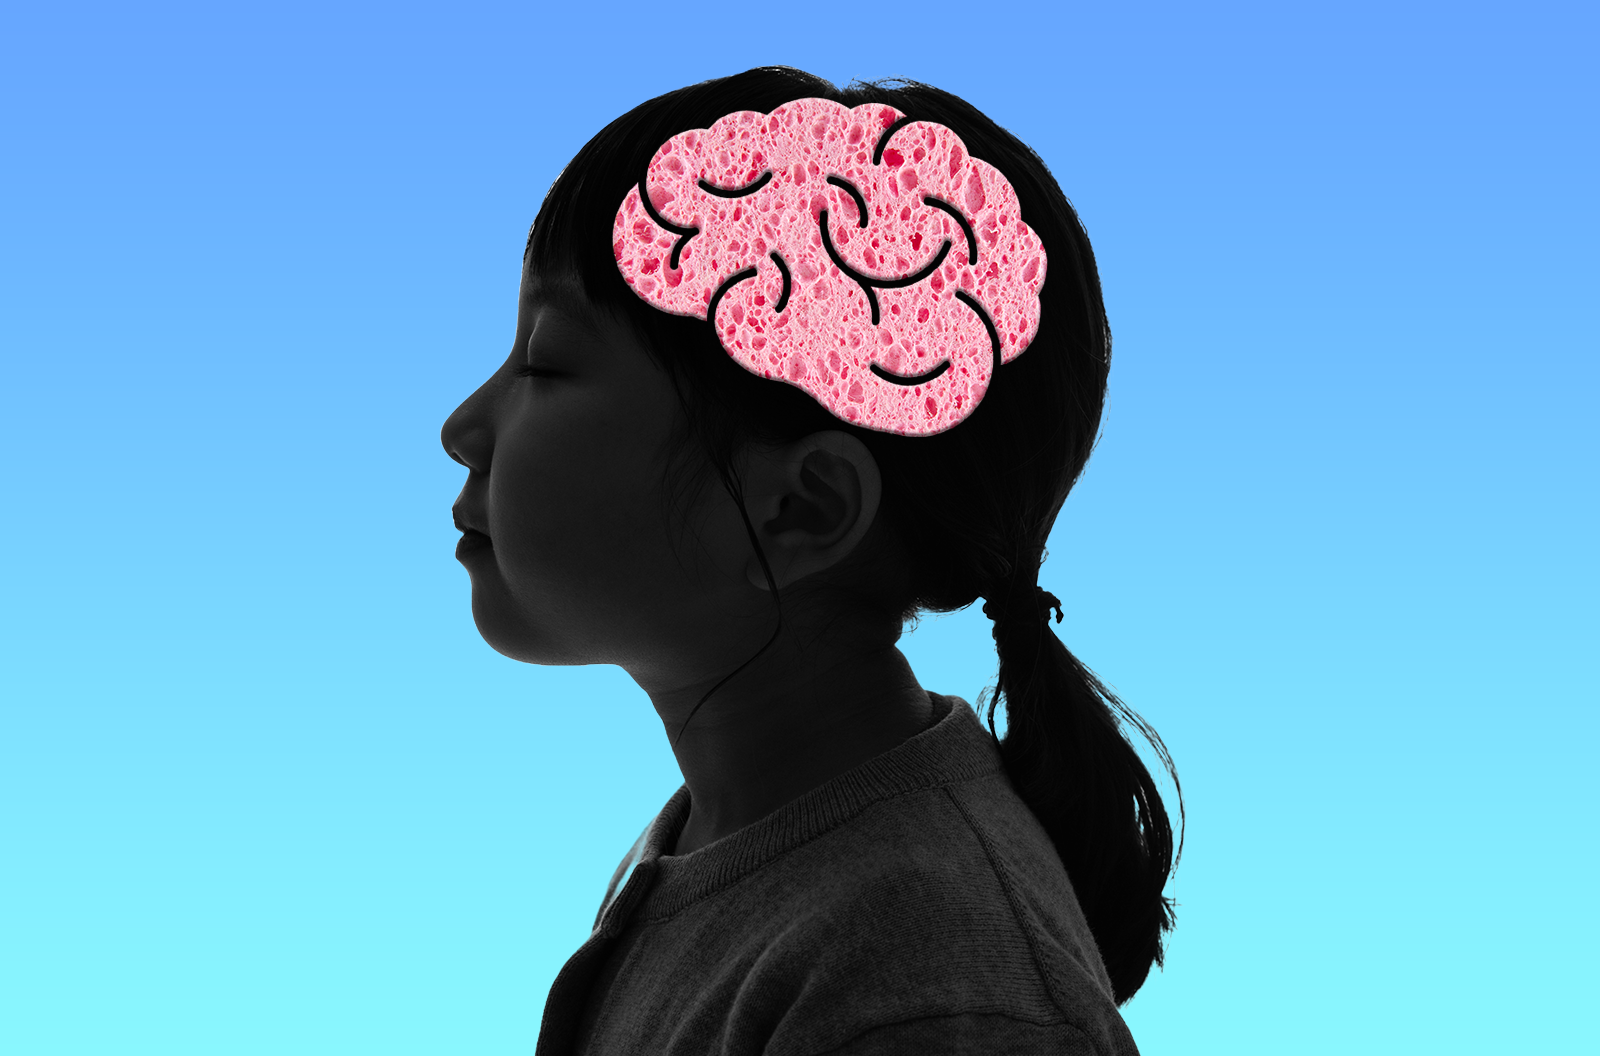 La silueta de una chica con un cerebro hecho de esponja rosa contra un fondo verdiazul con gotas de agua.